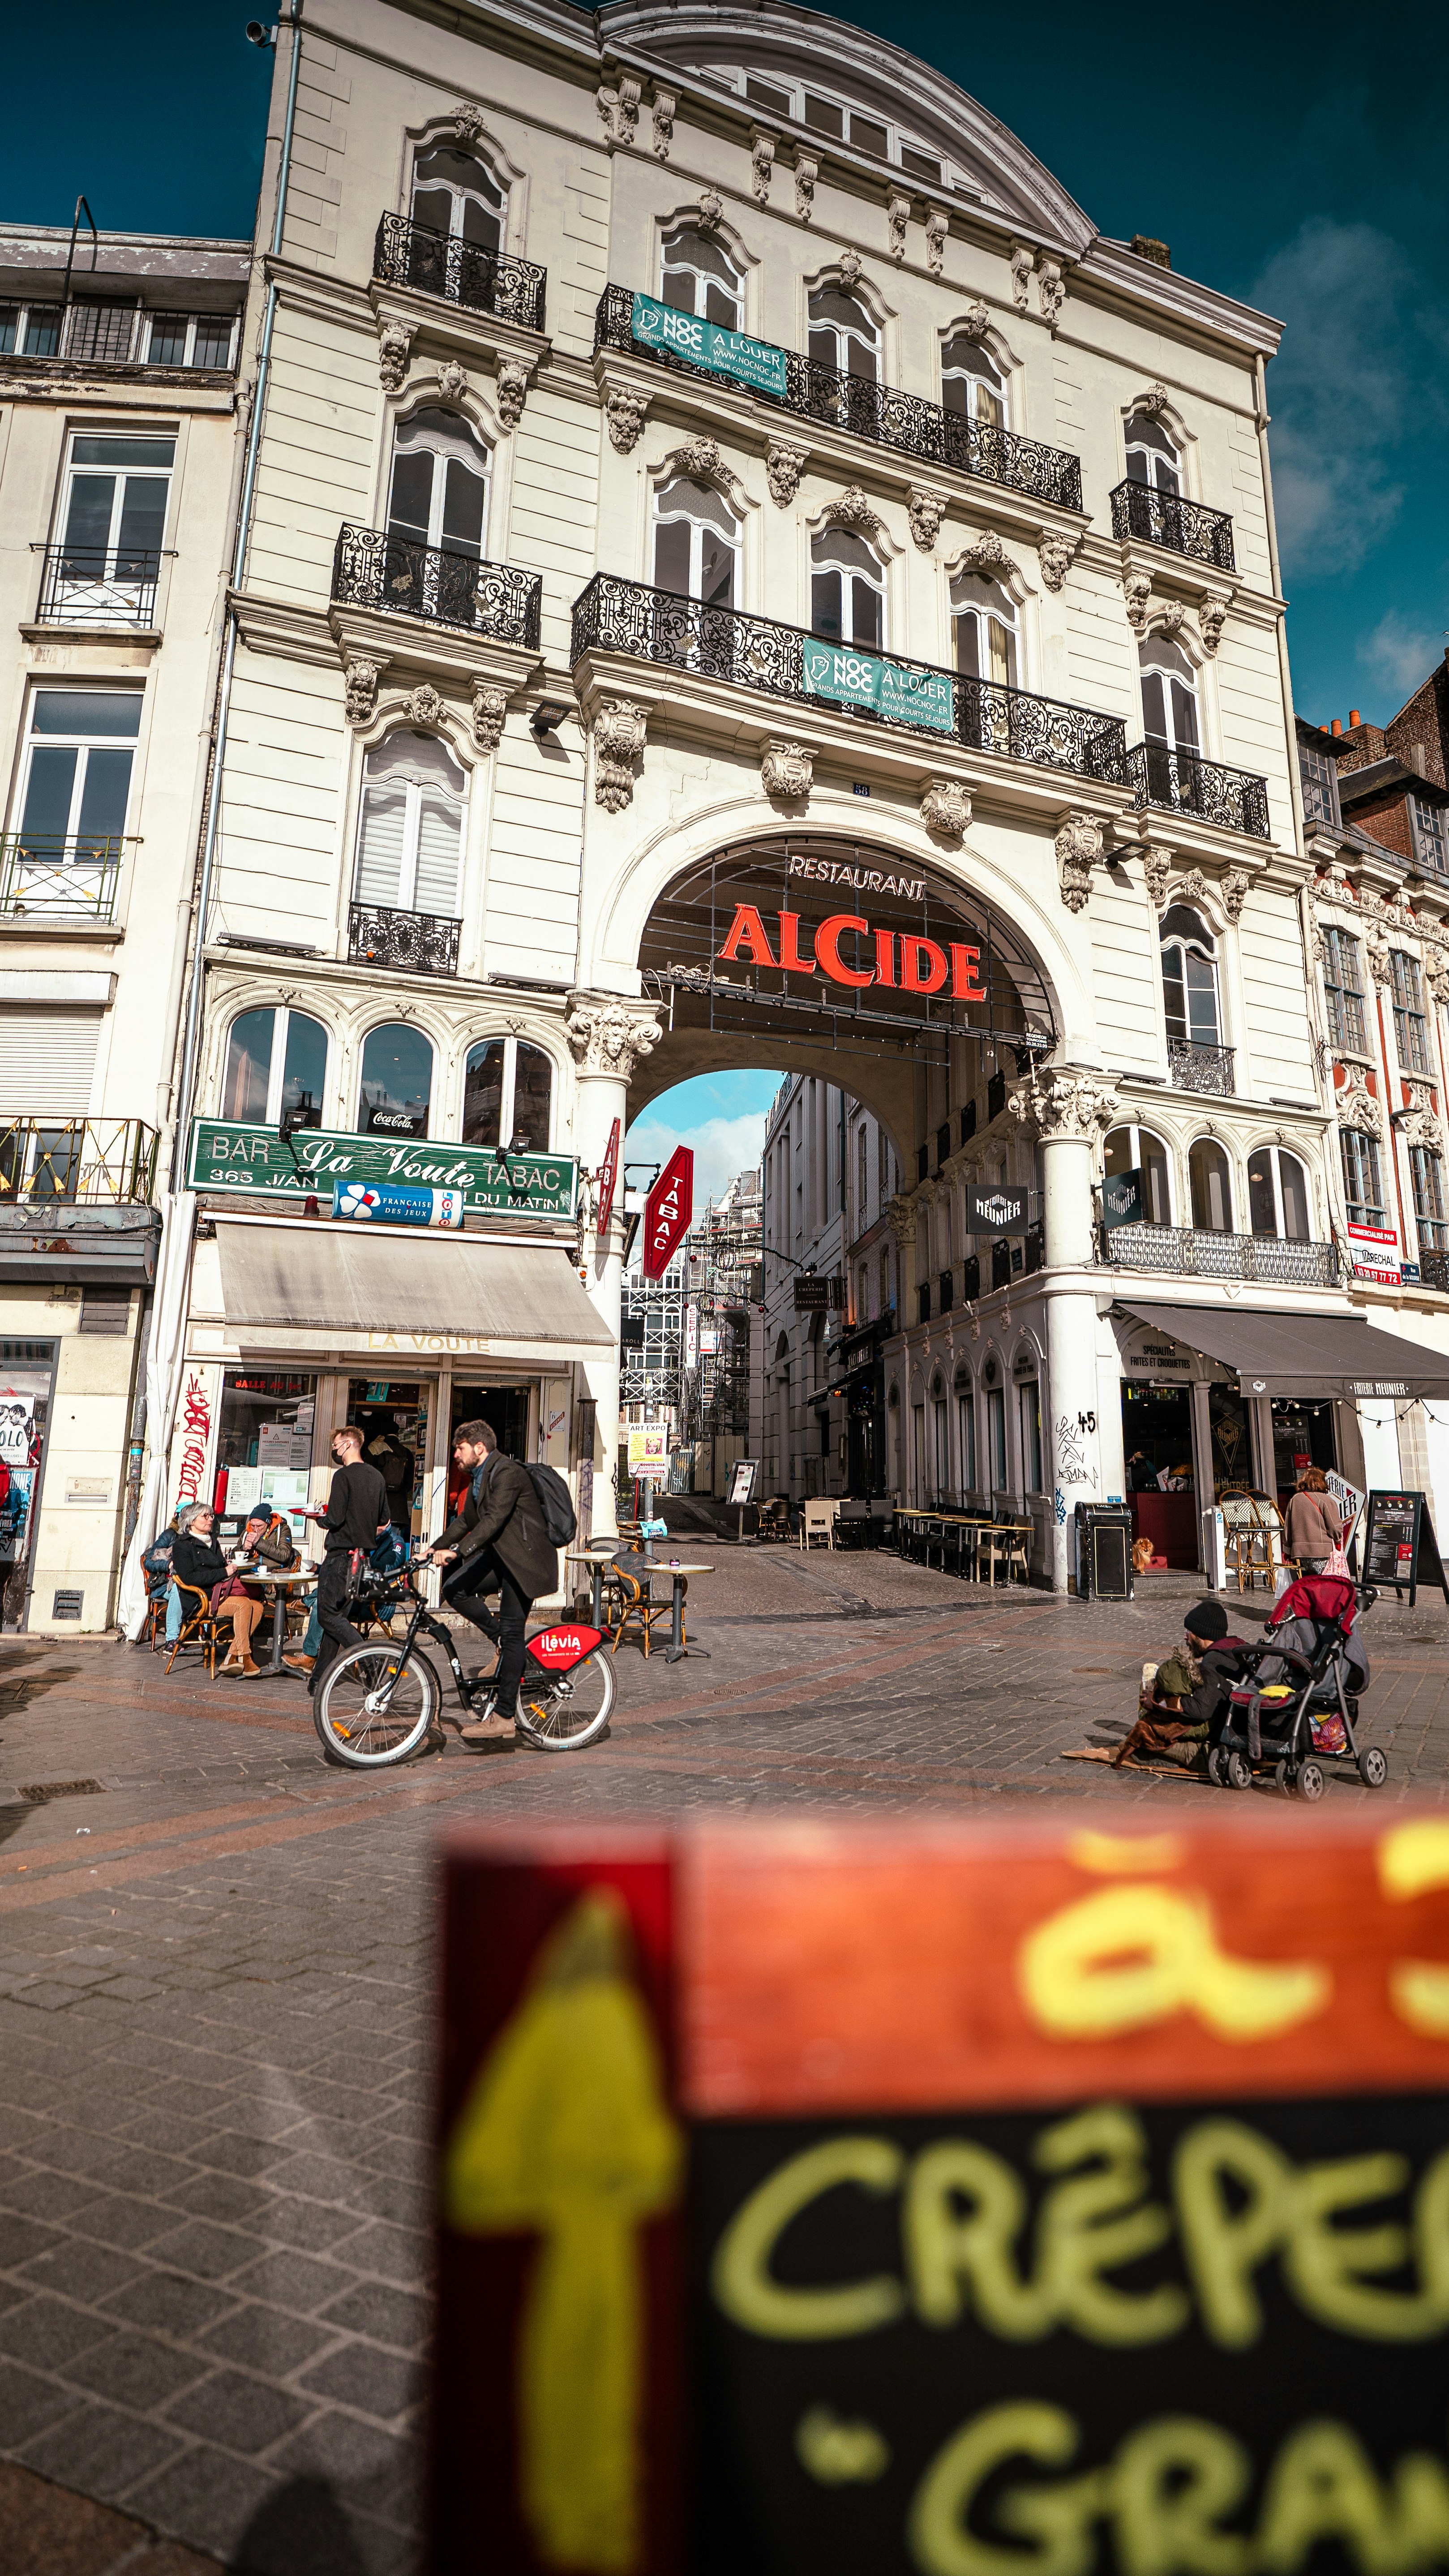 Restaurant Alcide - Grand-Place de Lille - Vlille Vélo

IG : jacqoto